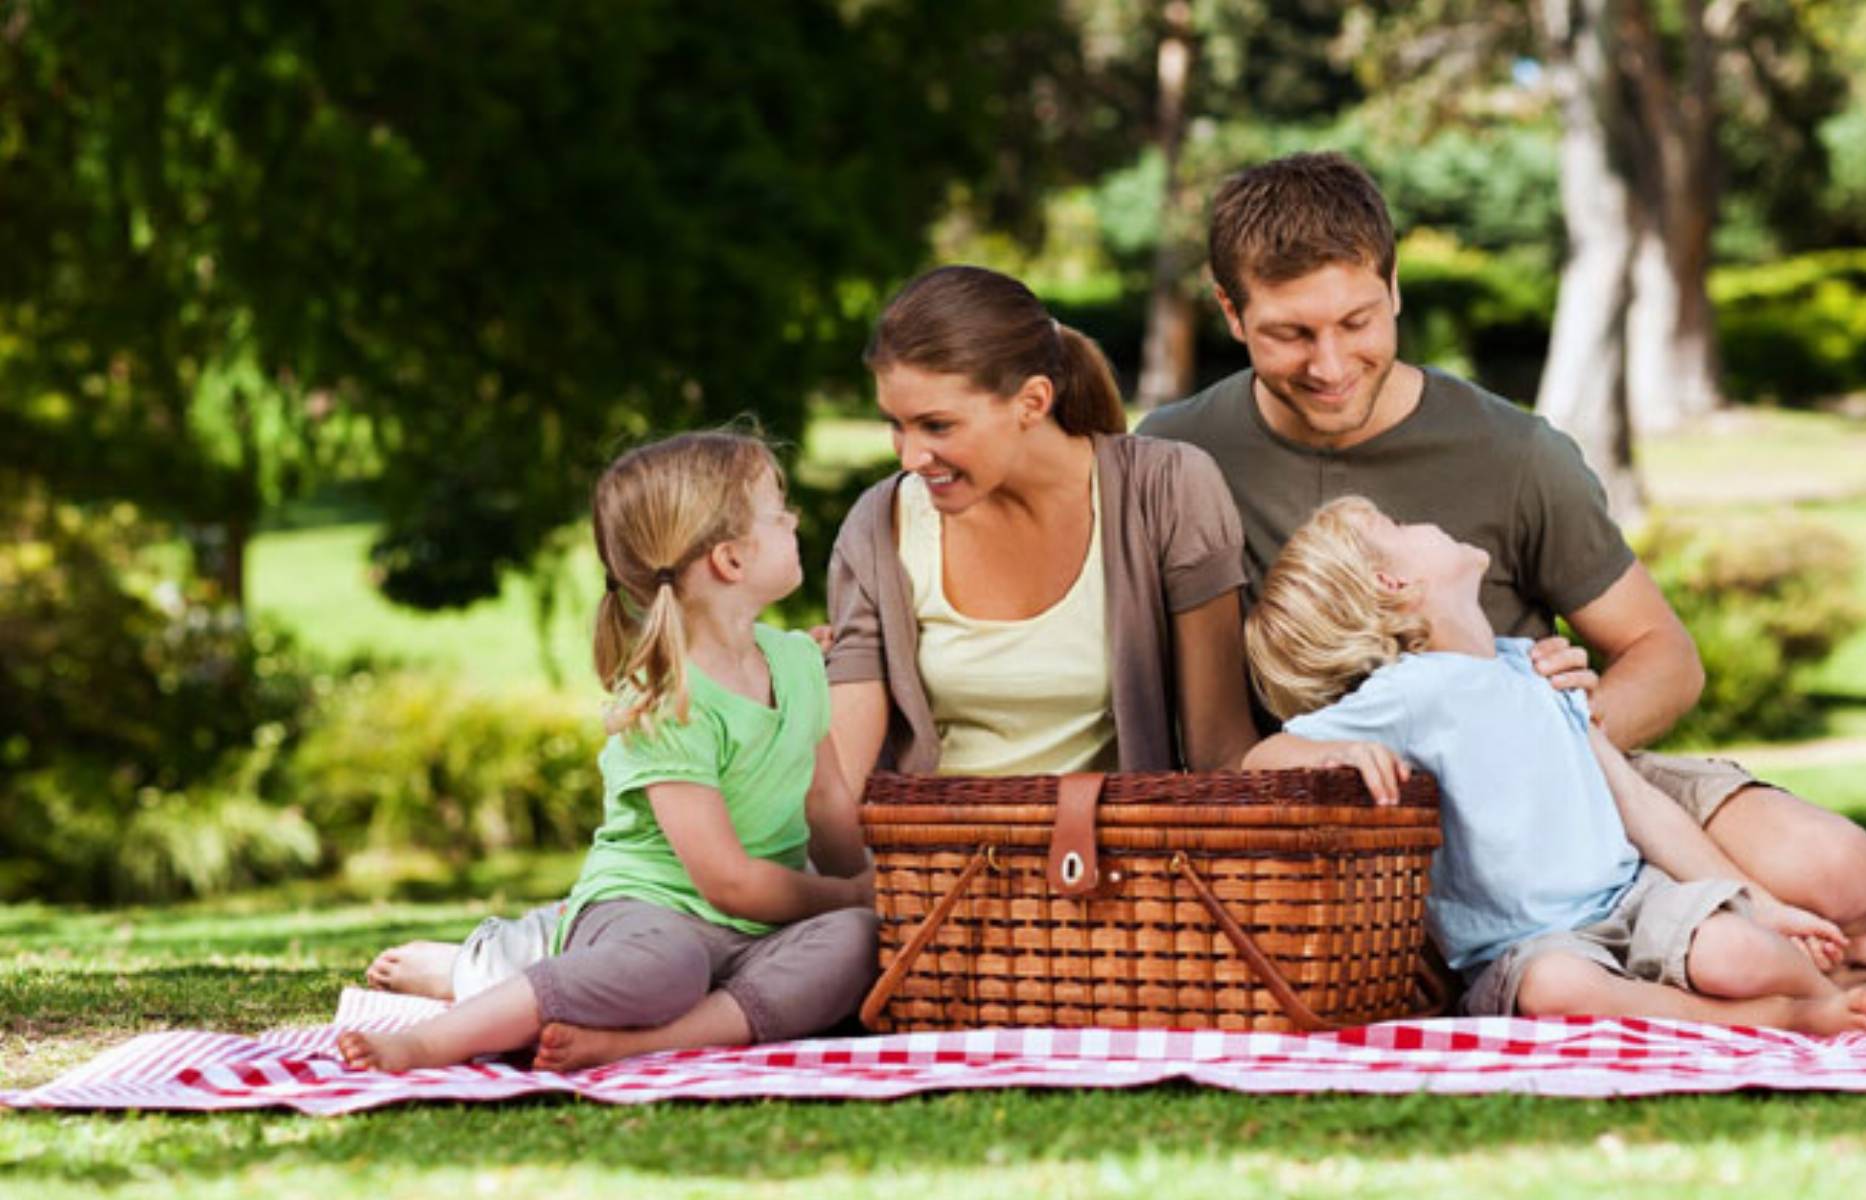 Видеоролик традиции семьи. Семья на пикнике. Ребенок в семье. Семейные традиции. Счастливая семья на природе.